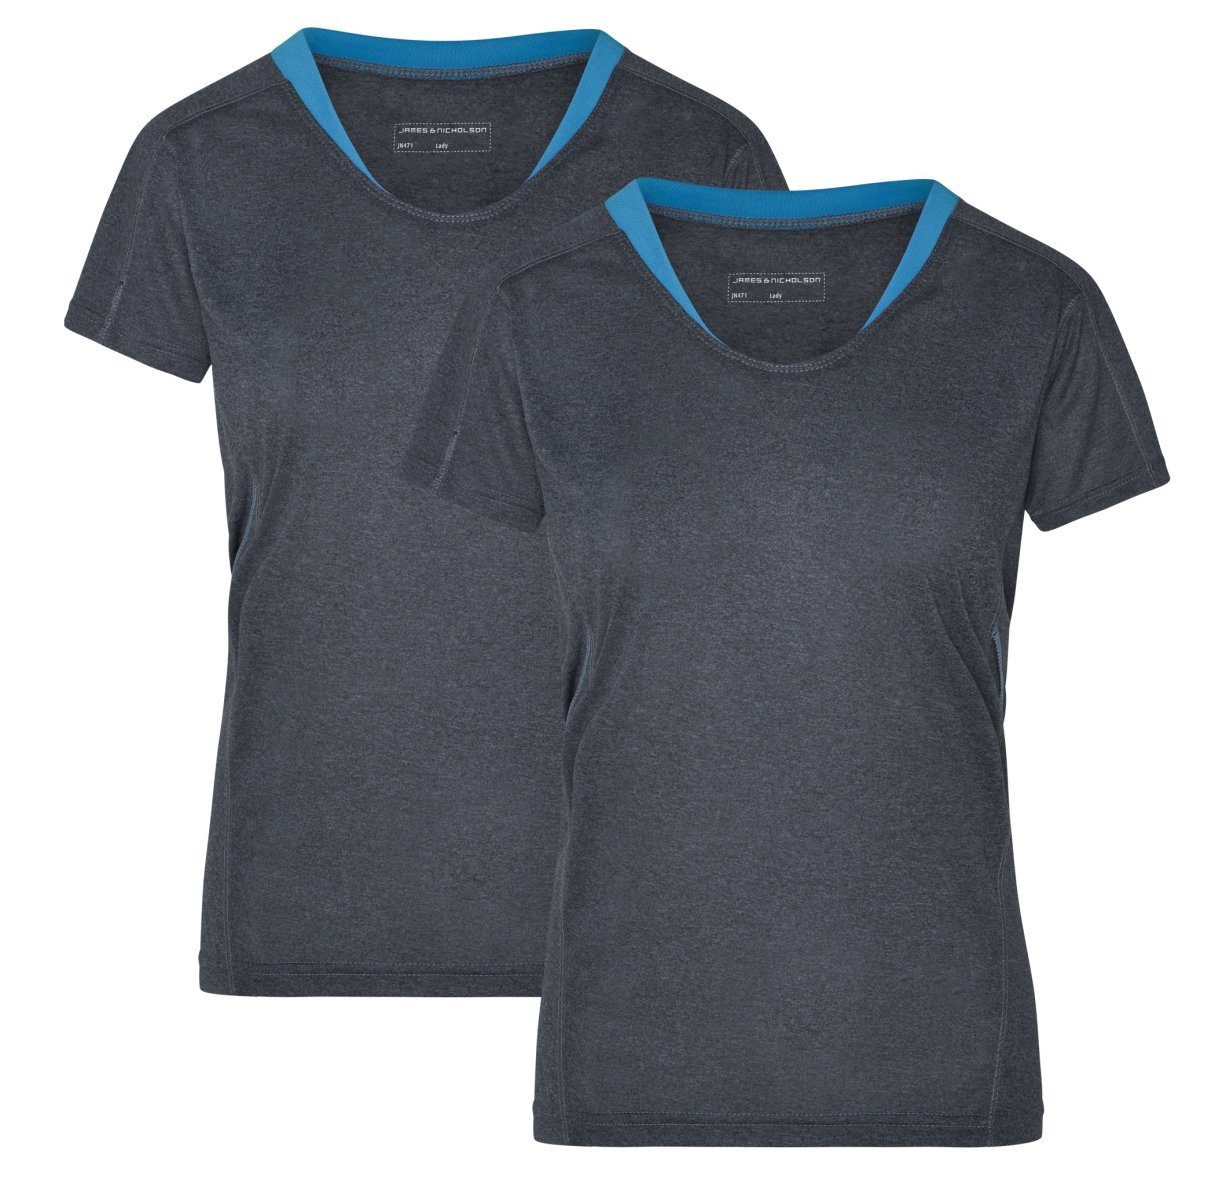 James & Nicholson Laufshirt Doppelpack Damen Kurzarm Laufshirt Running T-Shirt JN471 (Doppelpack, 2 Stück) Atmungsaktiv und Feuchtigkeitsregulierend black-melange/atlantic